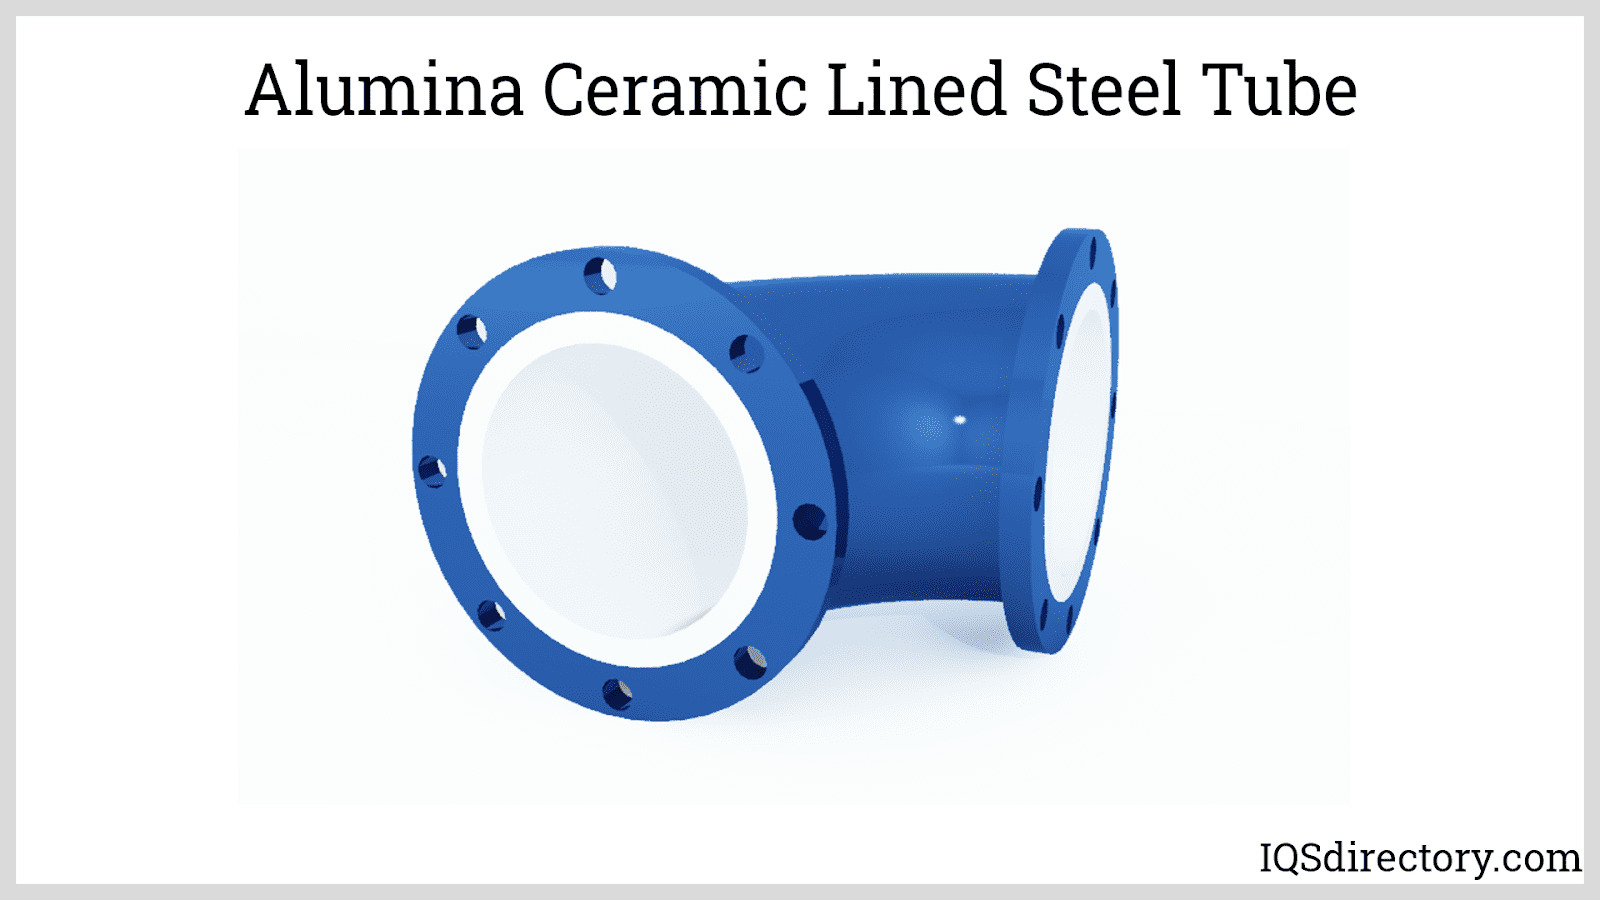 Alumina Ceramic Lined Steel Tube